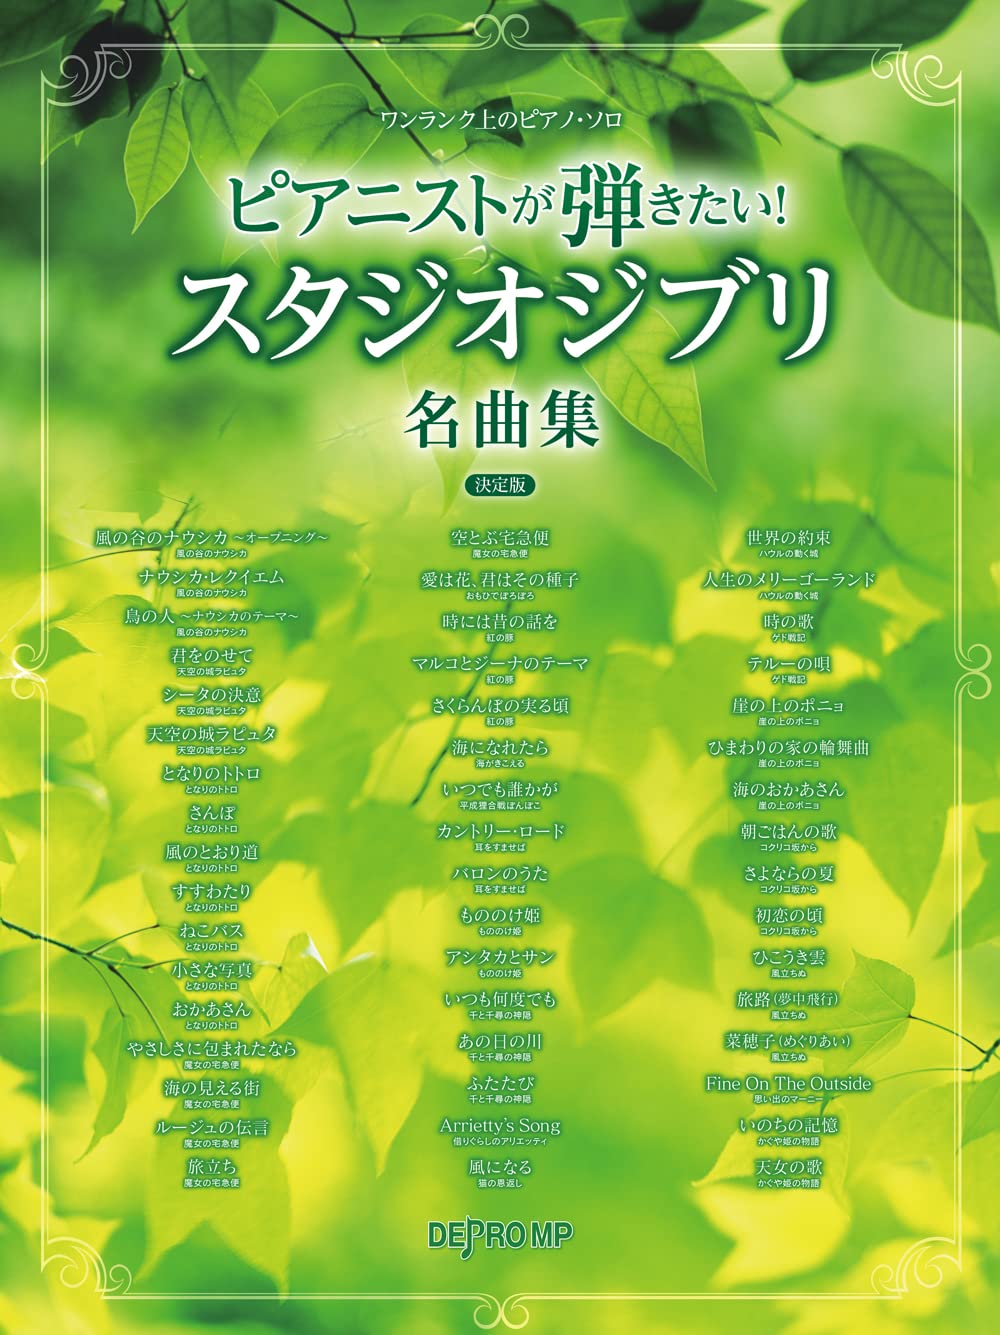 The collection of Studio Ghibli songs Piano Solo(Pre-Intermediate)